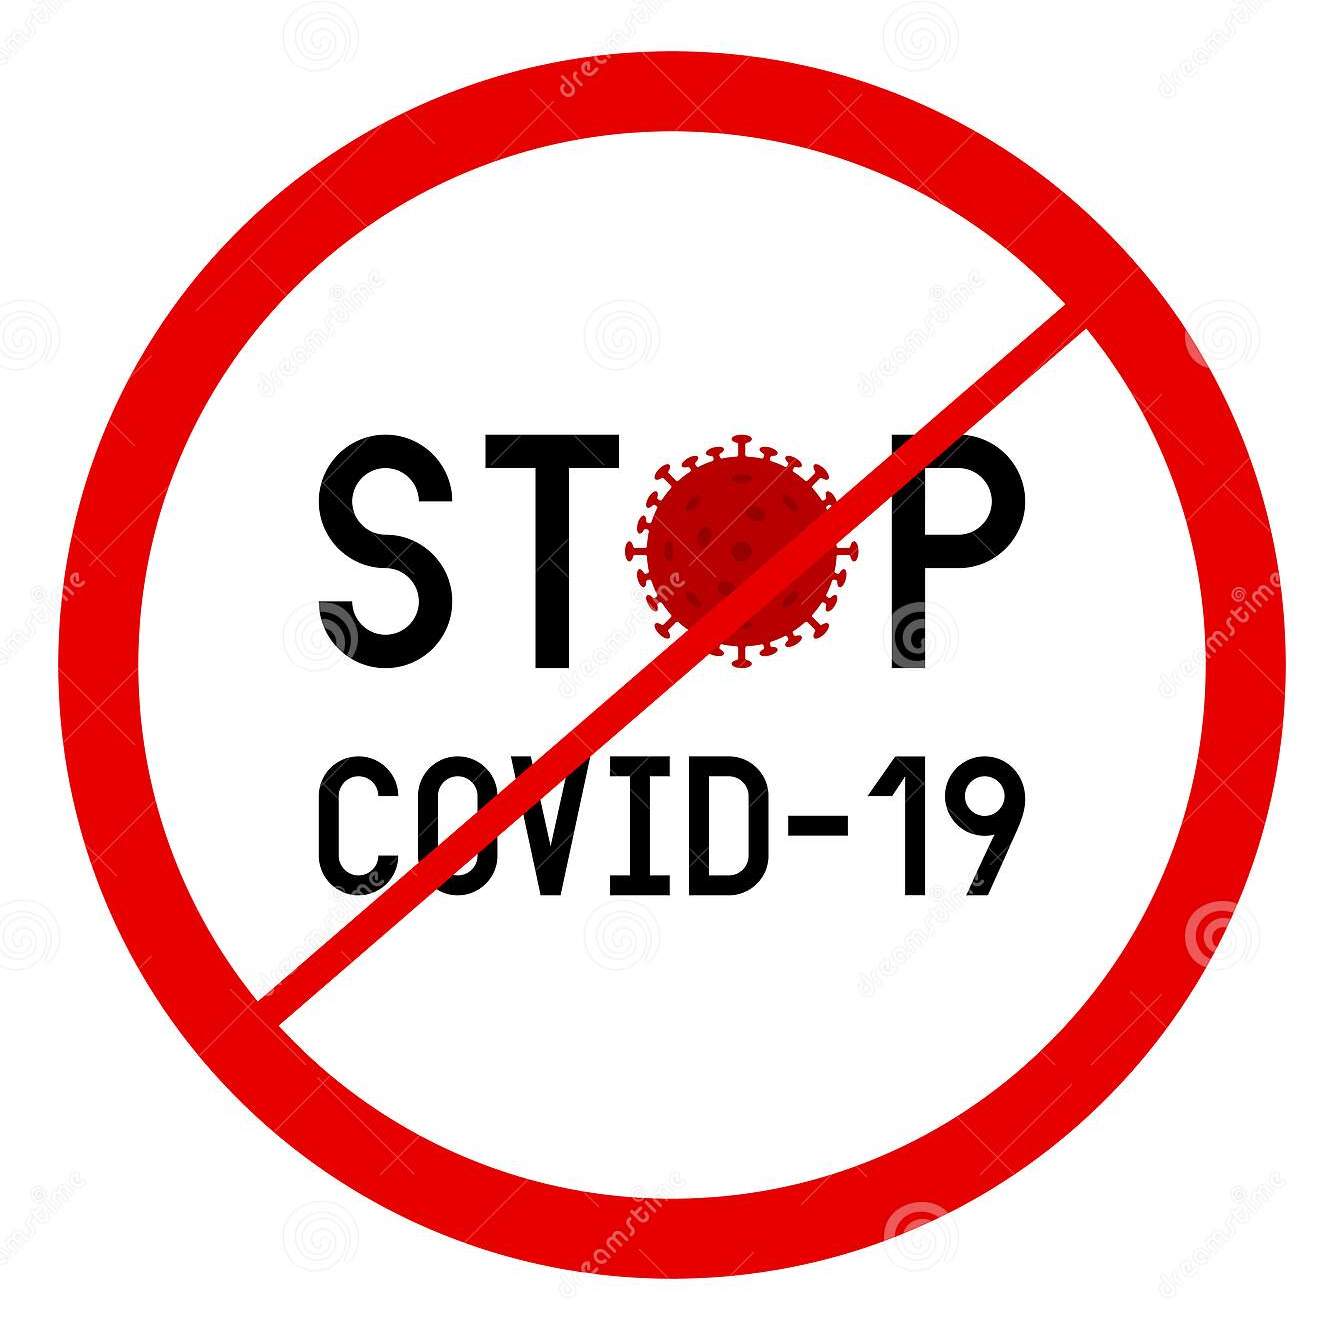 Для снижения риска заражения  COVID-19